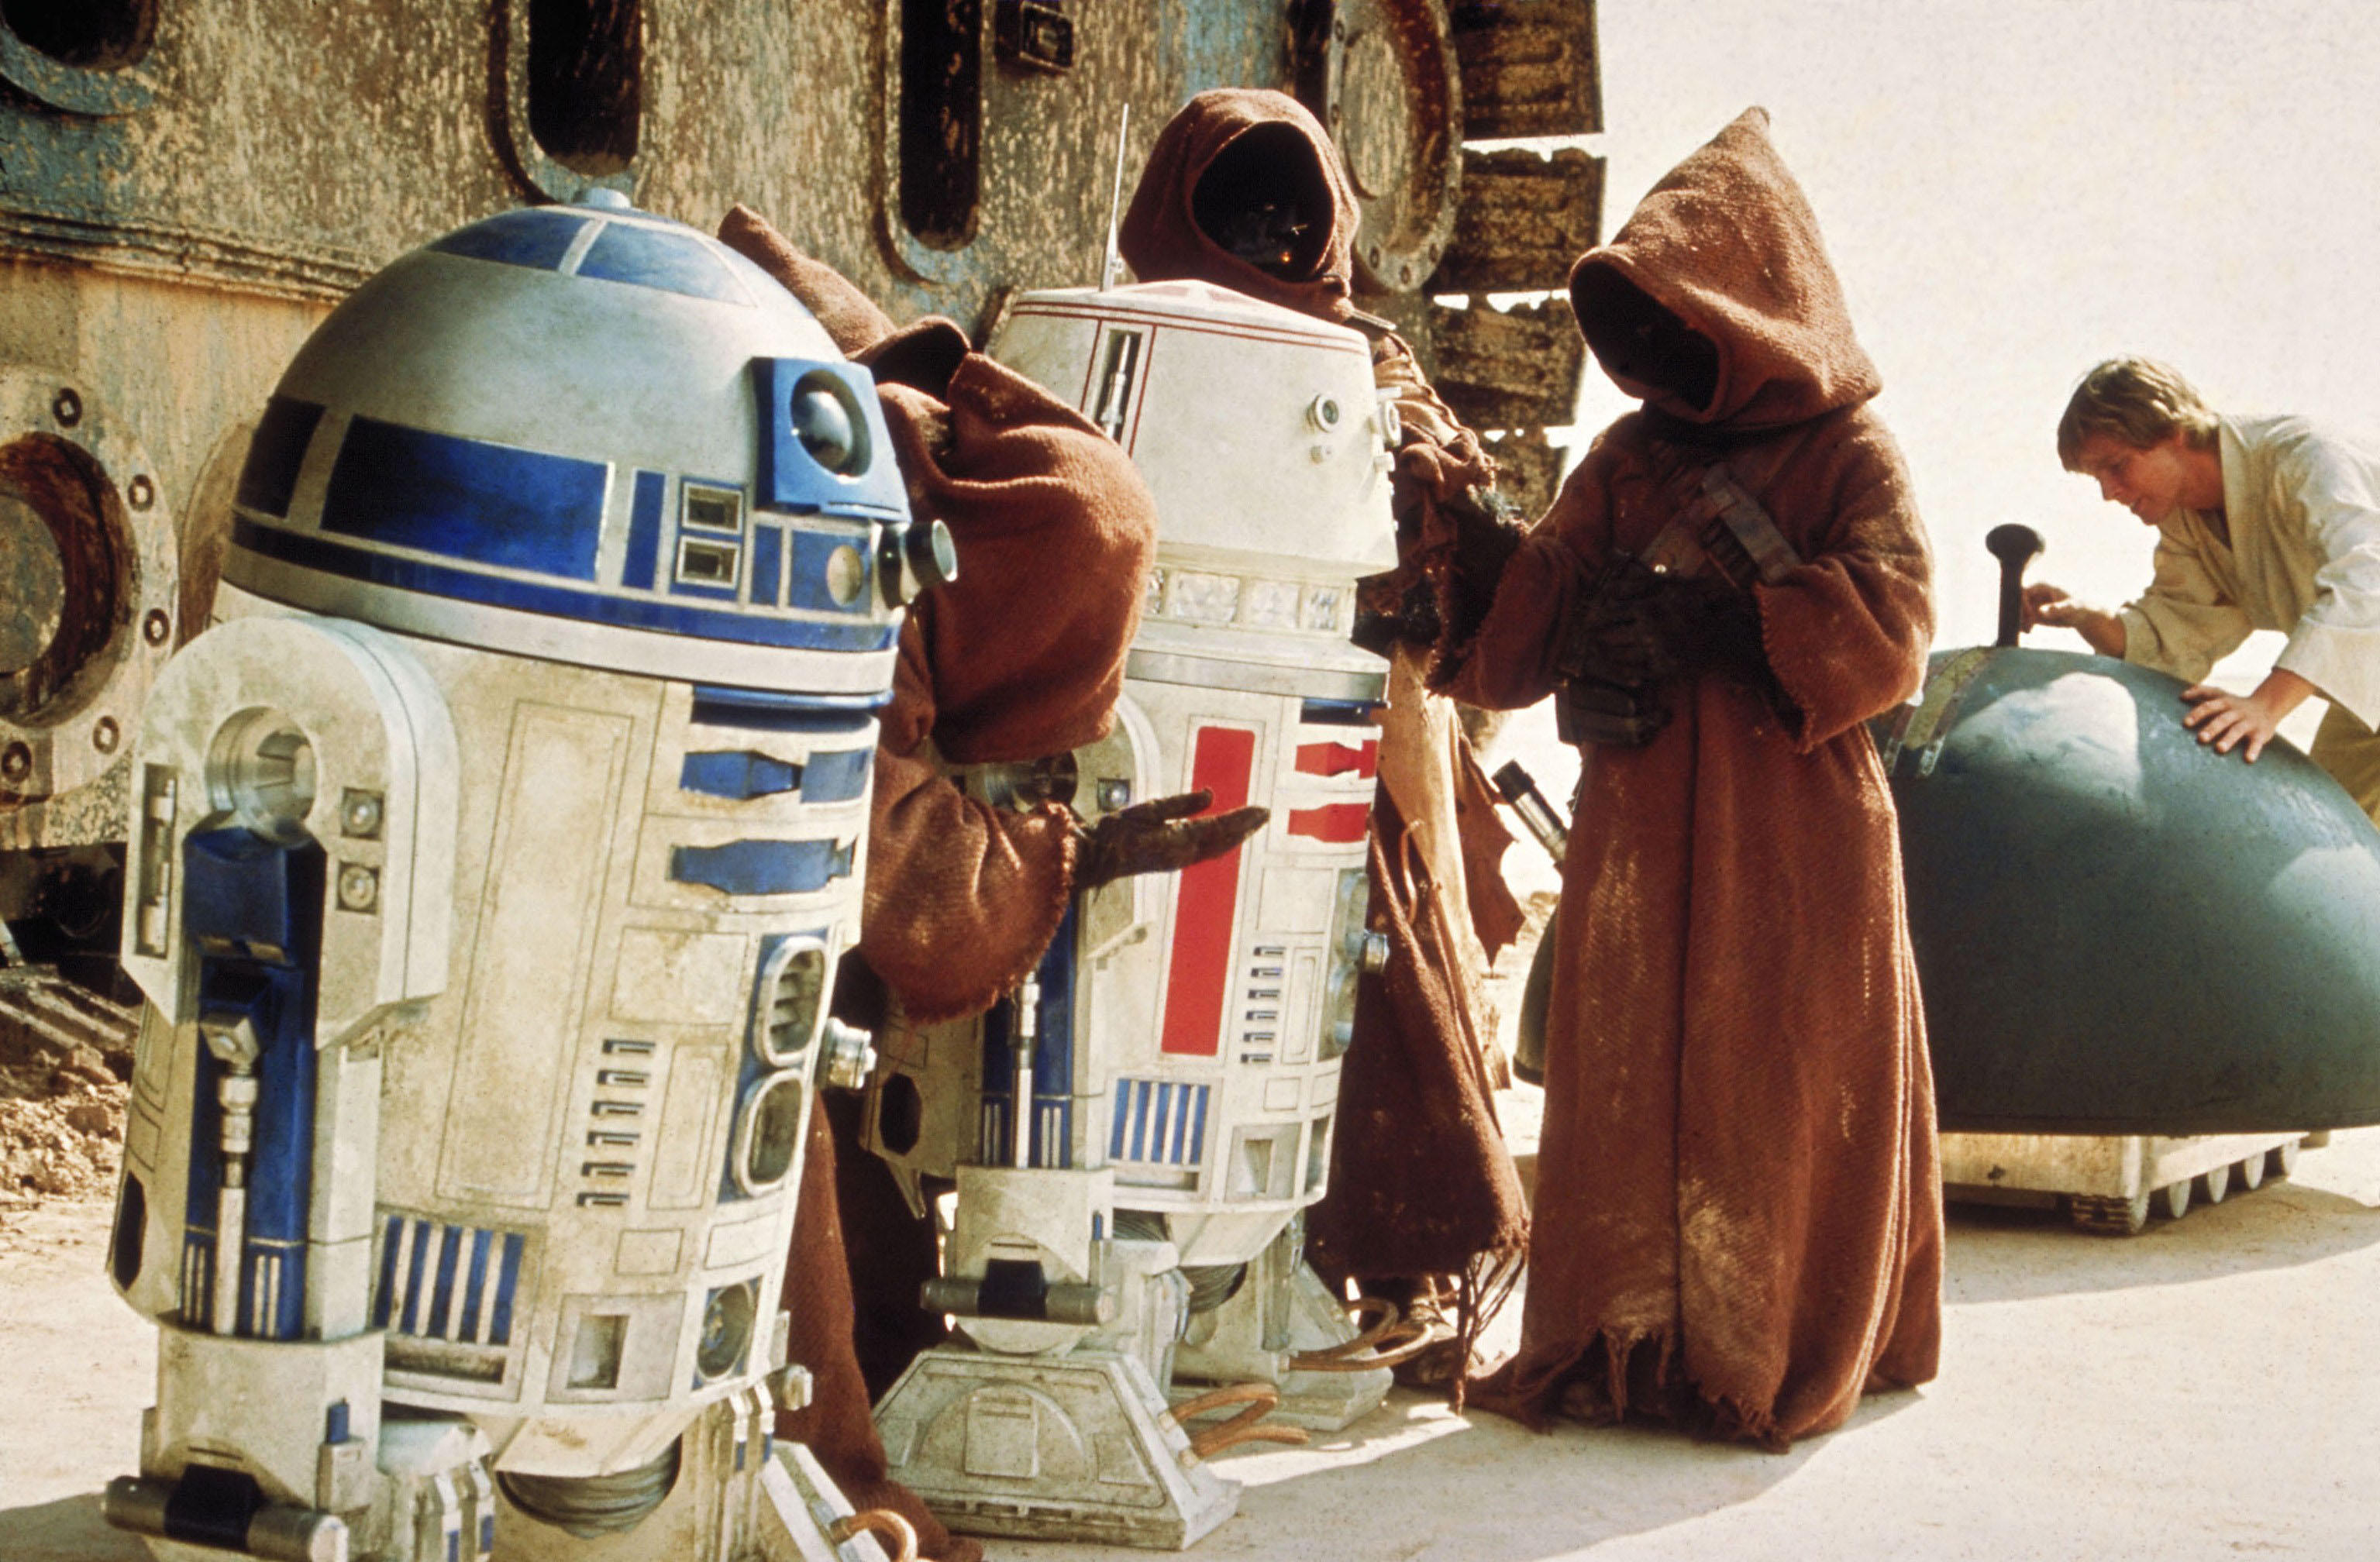 Ja war 1977 im ursprünglichen Star Wars-Film „Eine neue Hoffnung“ zu sehen